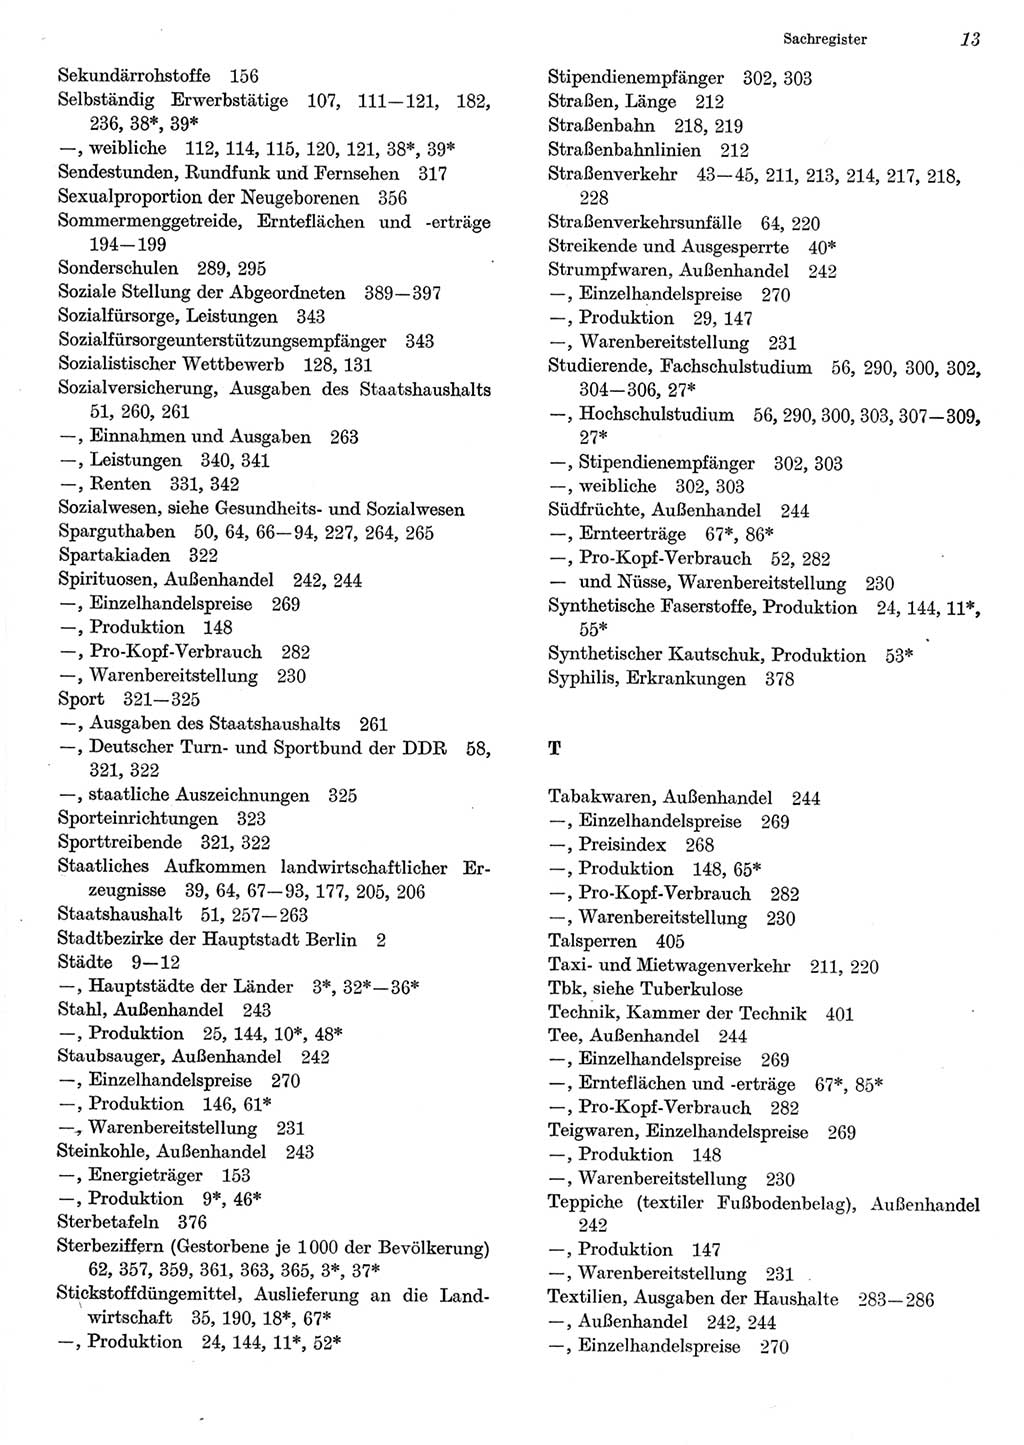 Statistisches Jahrbuch der Deutschen Demokratischen Republik (DDR) 1984, Seite 13 (Stat. Jb. DDR 1984, S. 13)